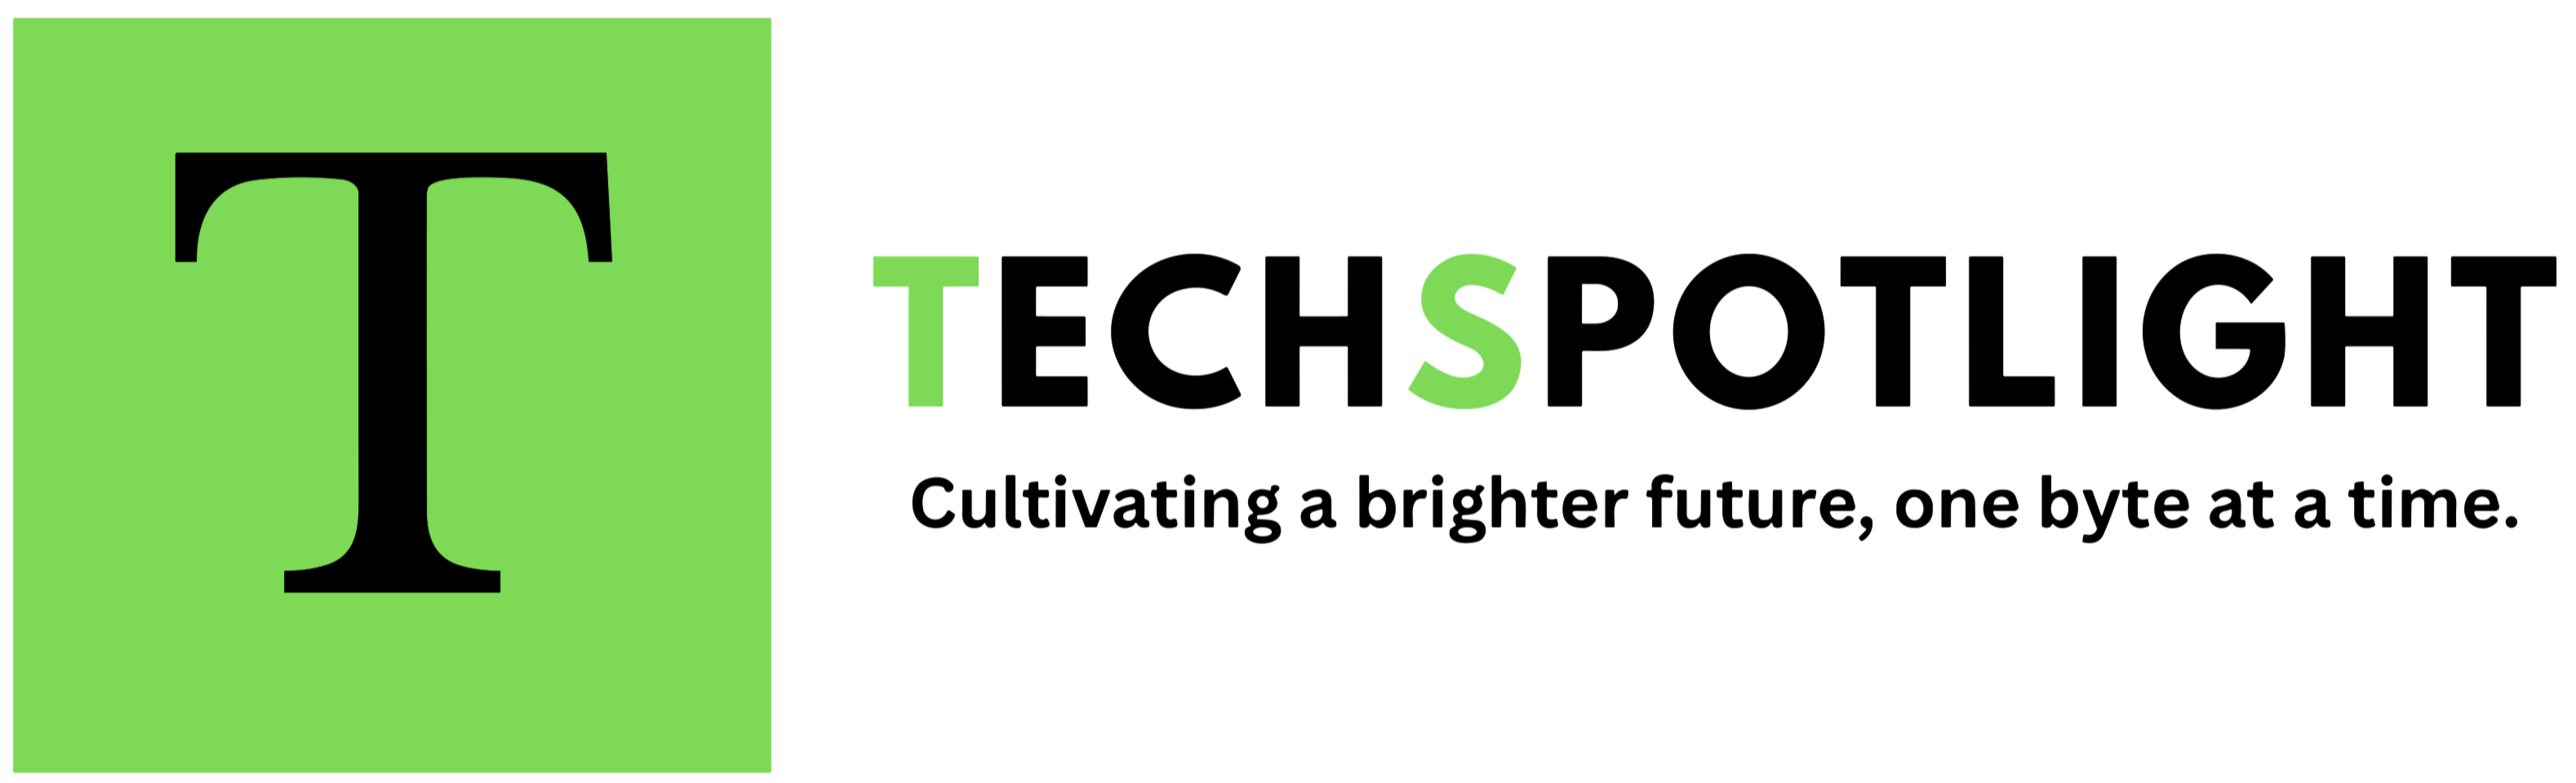 Techspotlight1